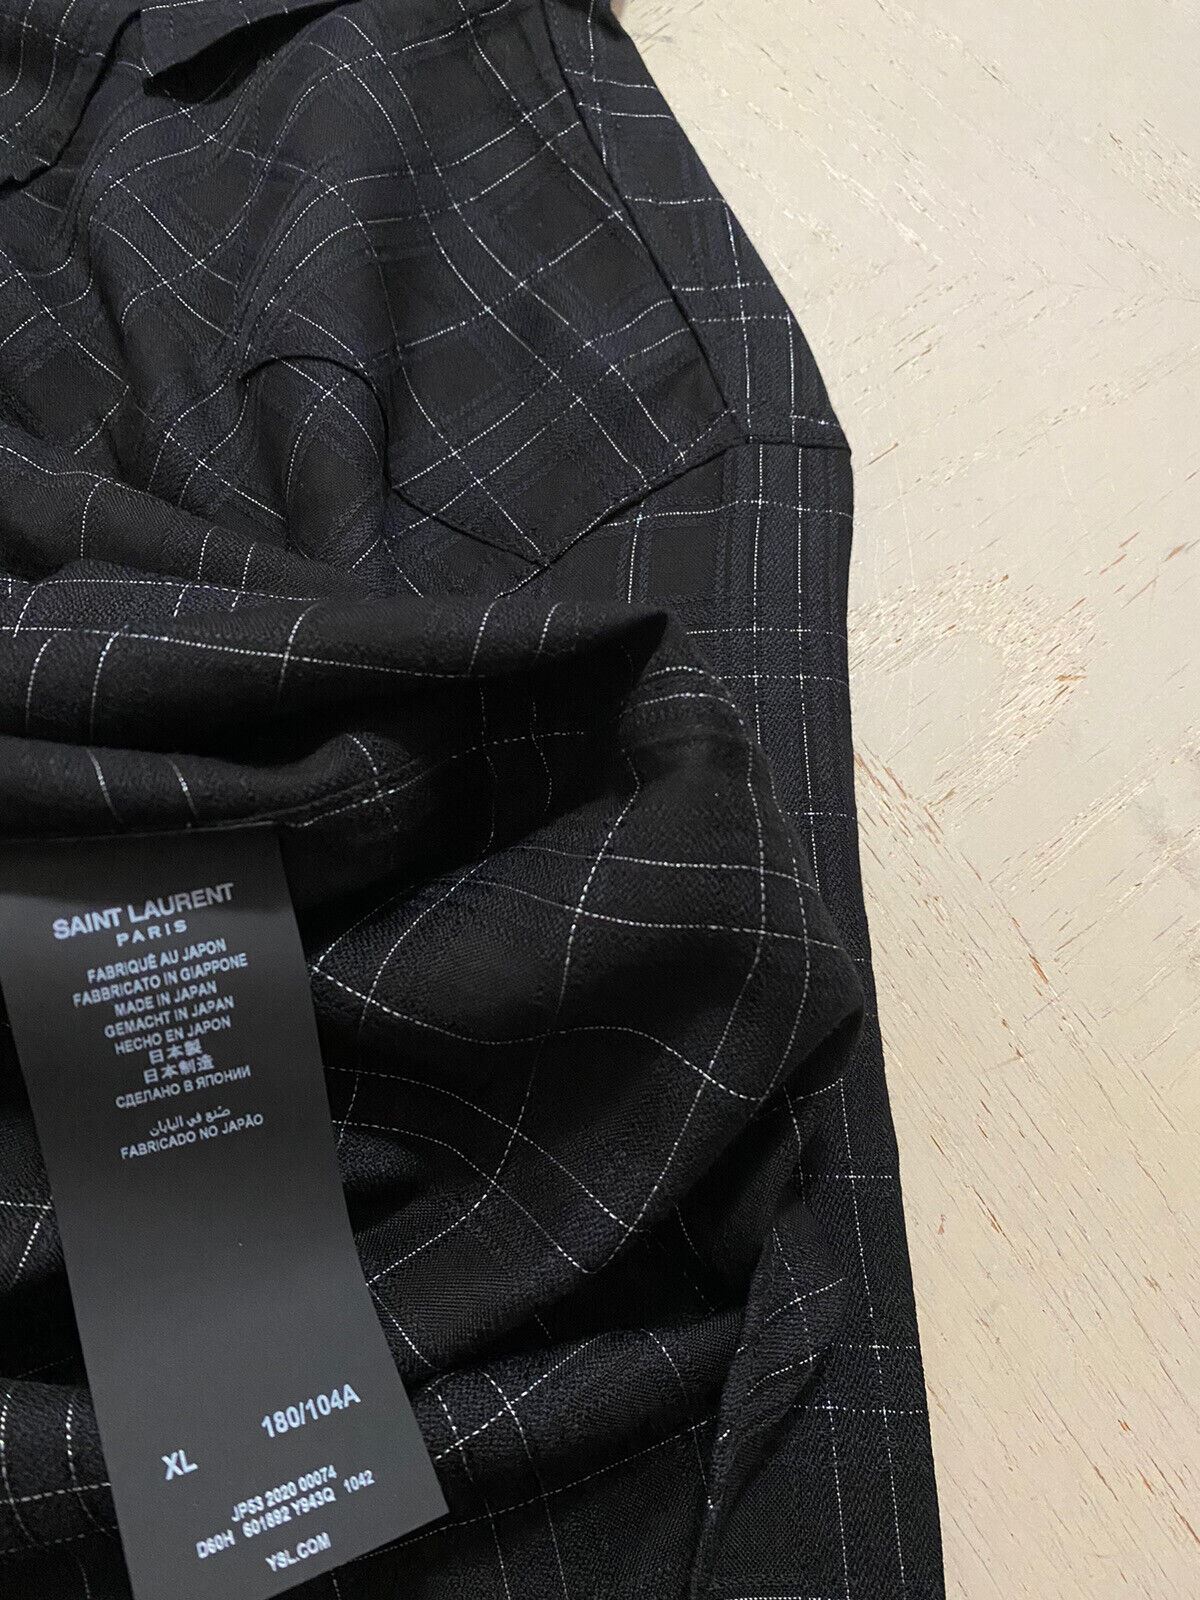 Мужская блестящая черная рубашка в стиле вестерн Saint Laurent, размер XL, NWT, 850 долларов, Италия